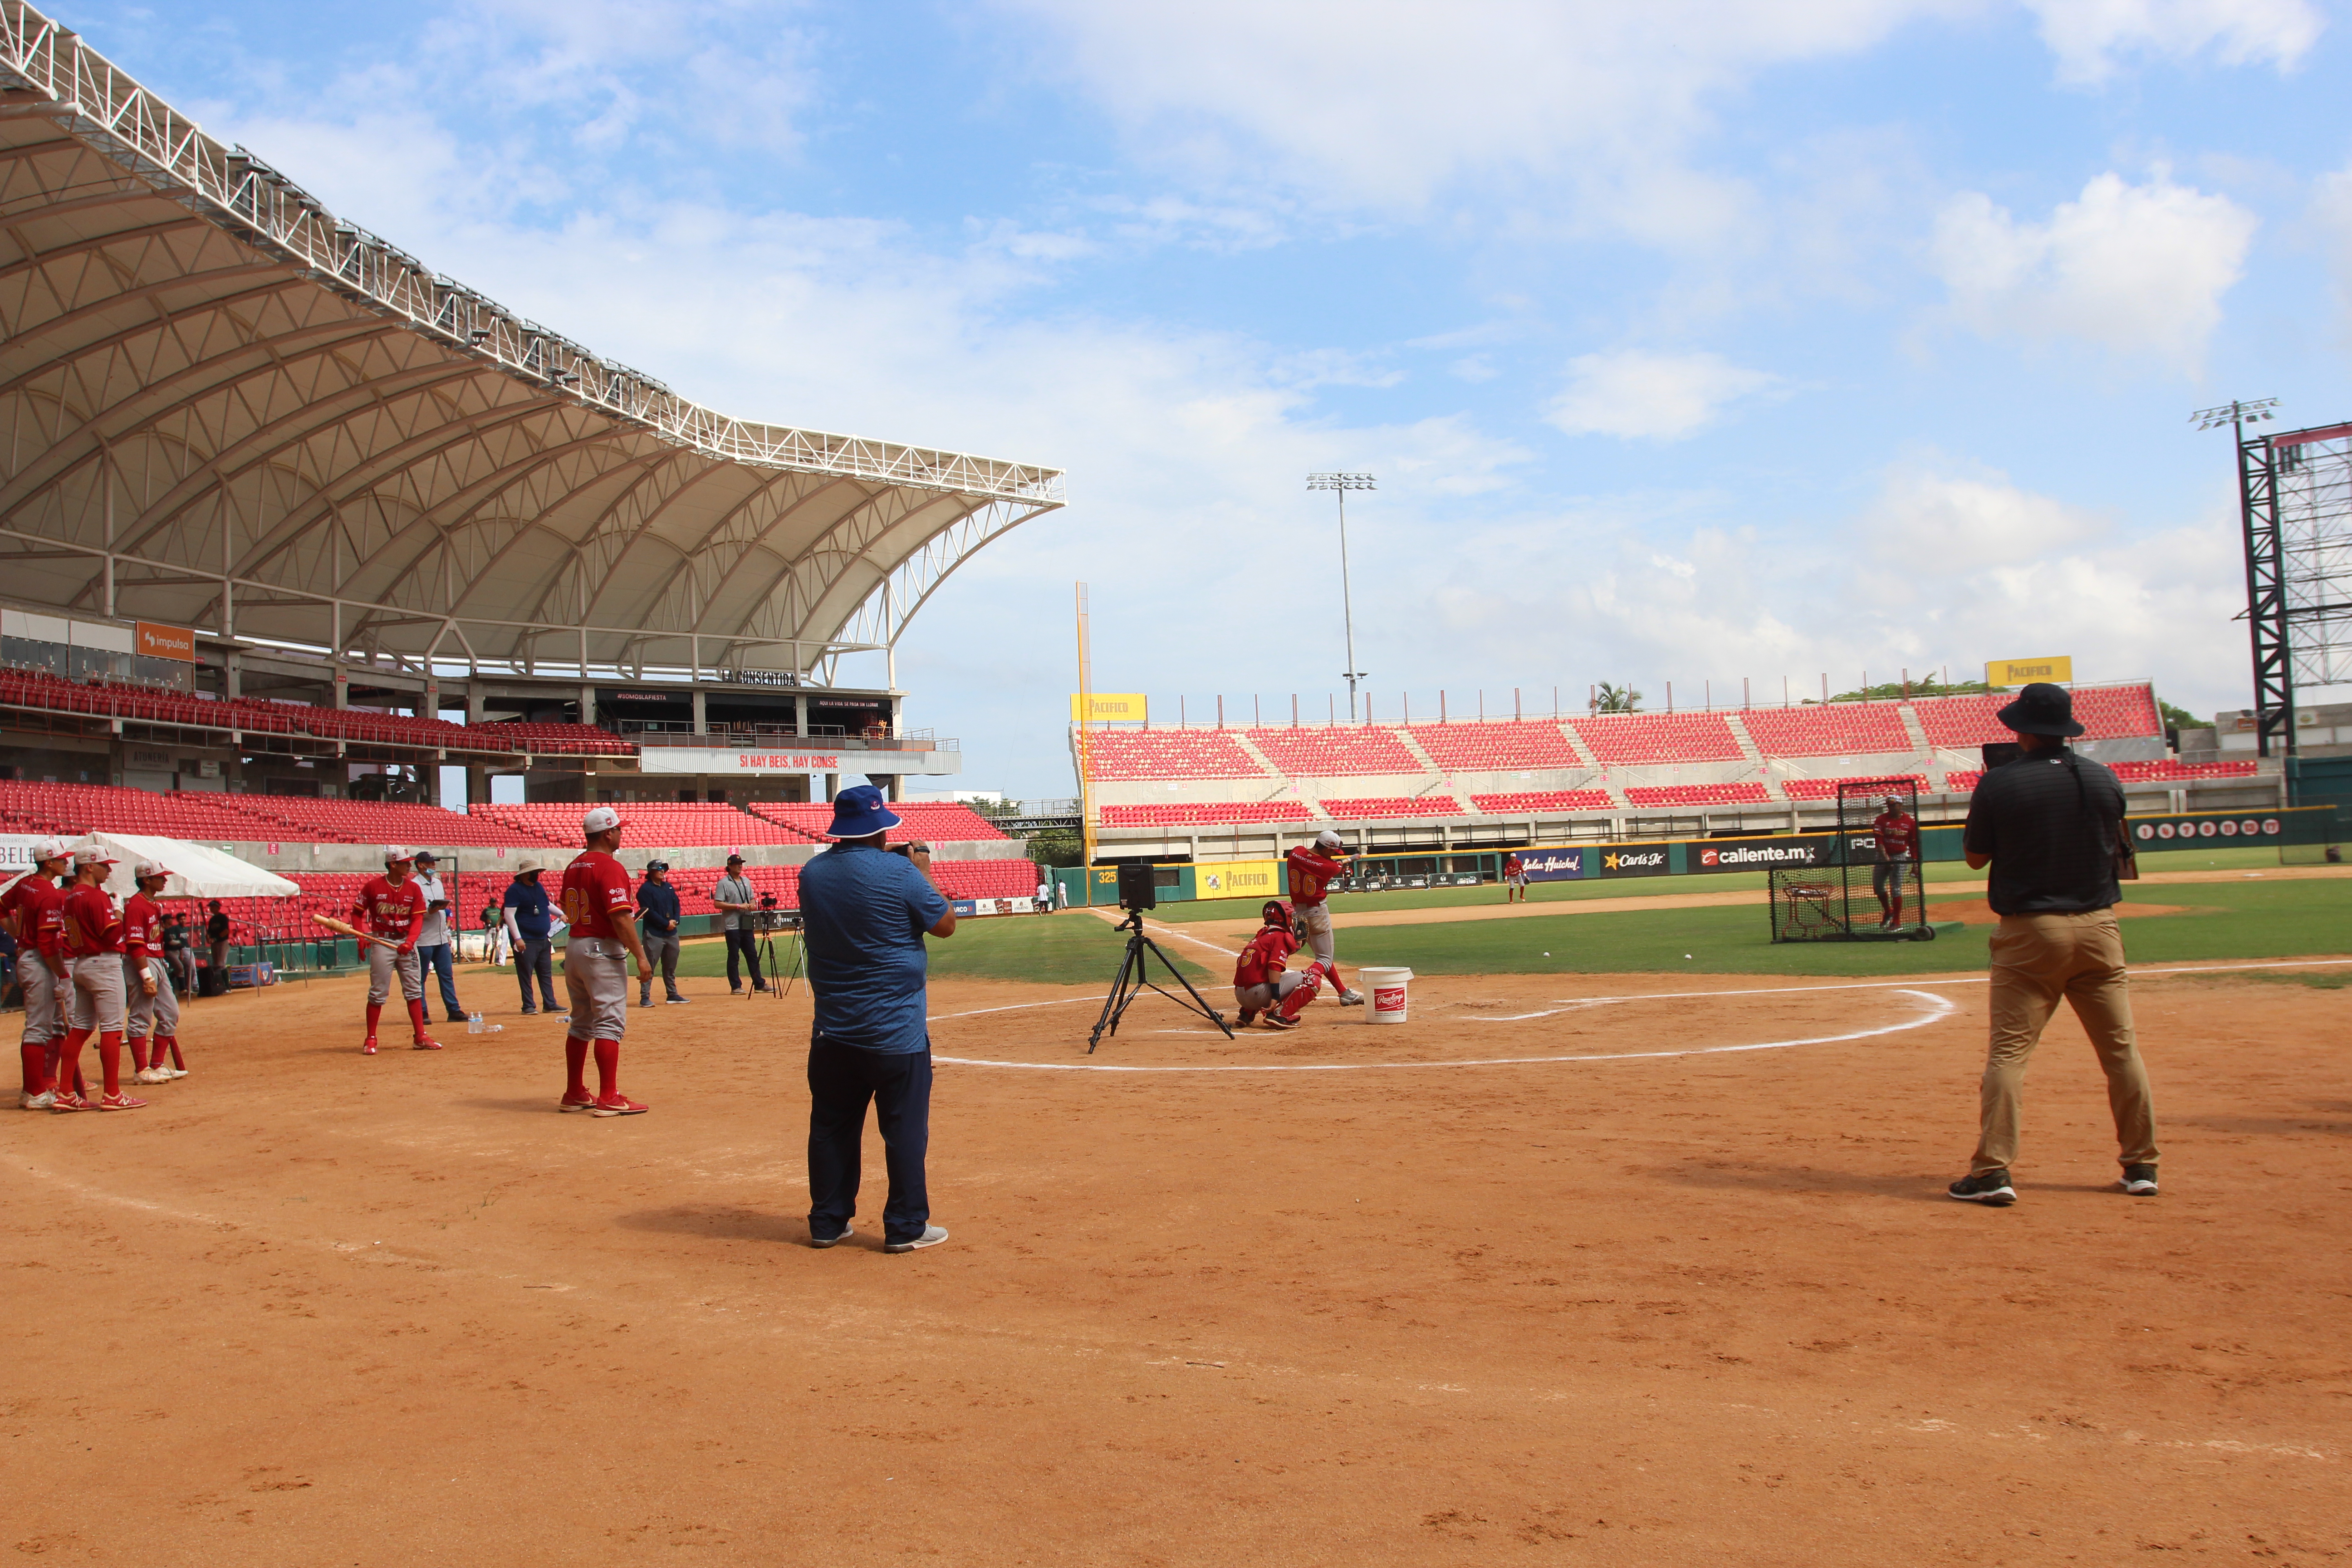 El Estadio Teodoro Mariscal recibe a jóvenes prospectos del beisbol mexicano, así como a scouts de Grandes Ligas y MLB